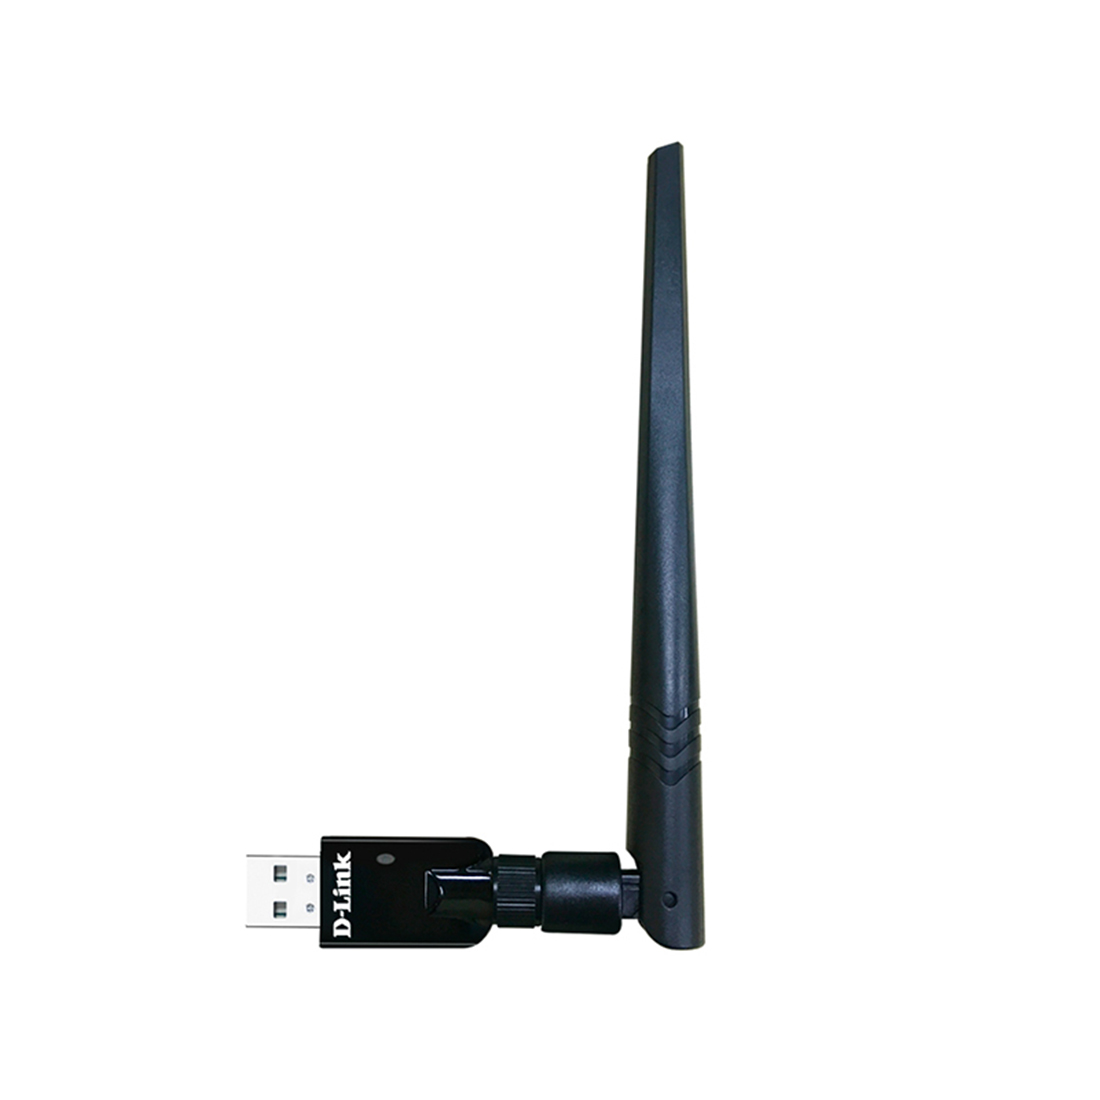 купить USB адаптер D-Link DWA-172/RU/B1A в Алматы